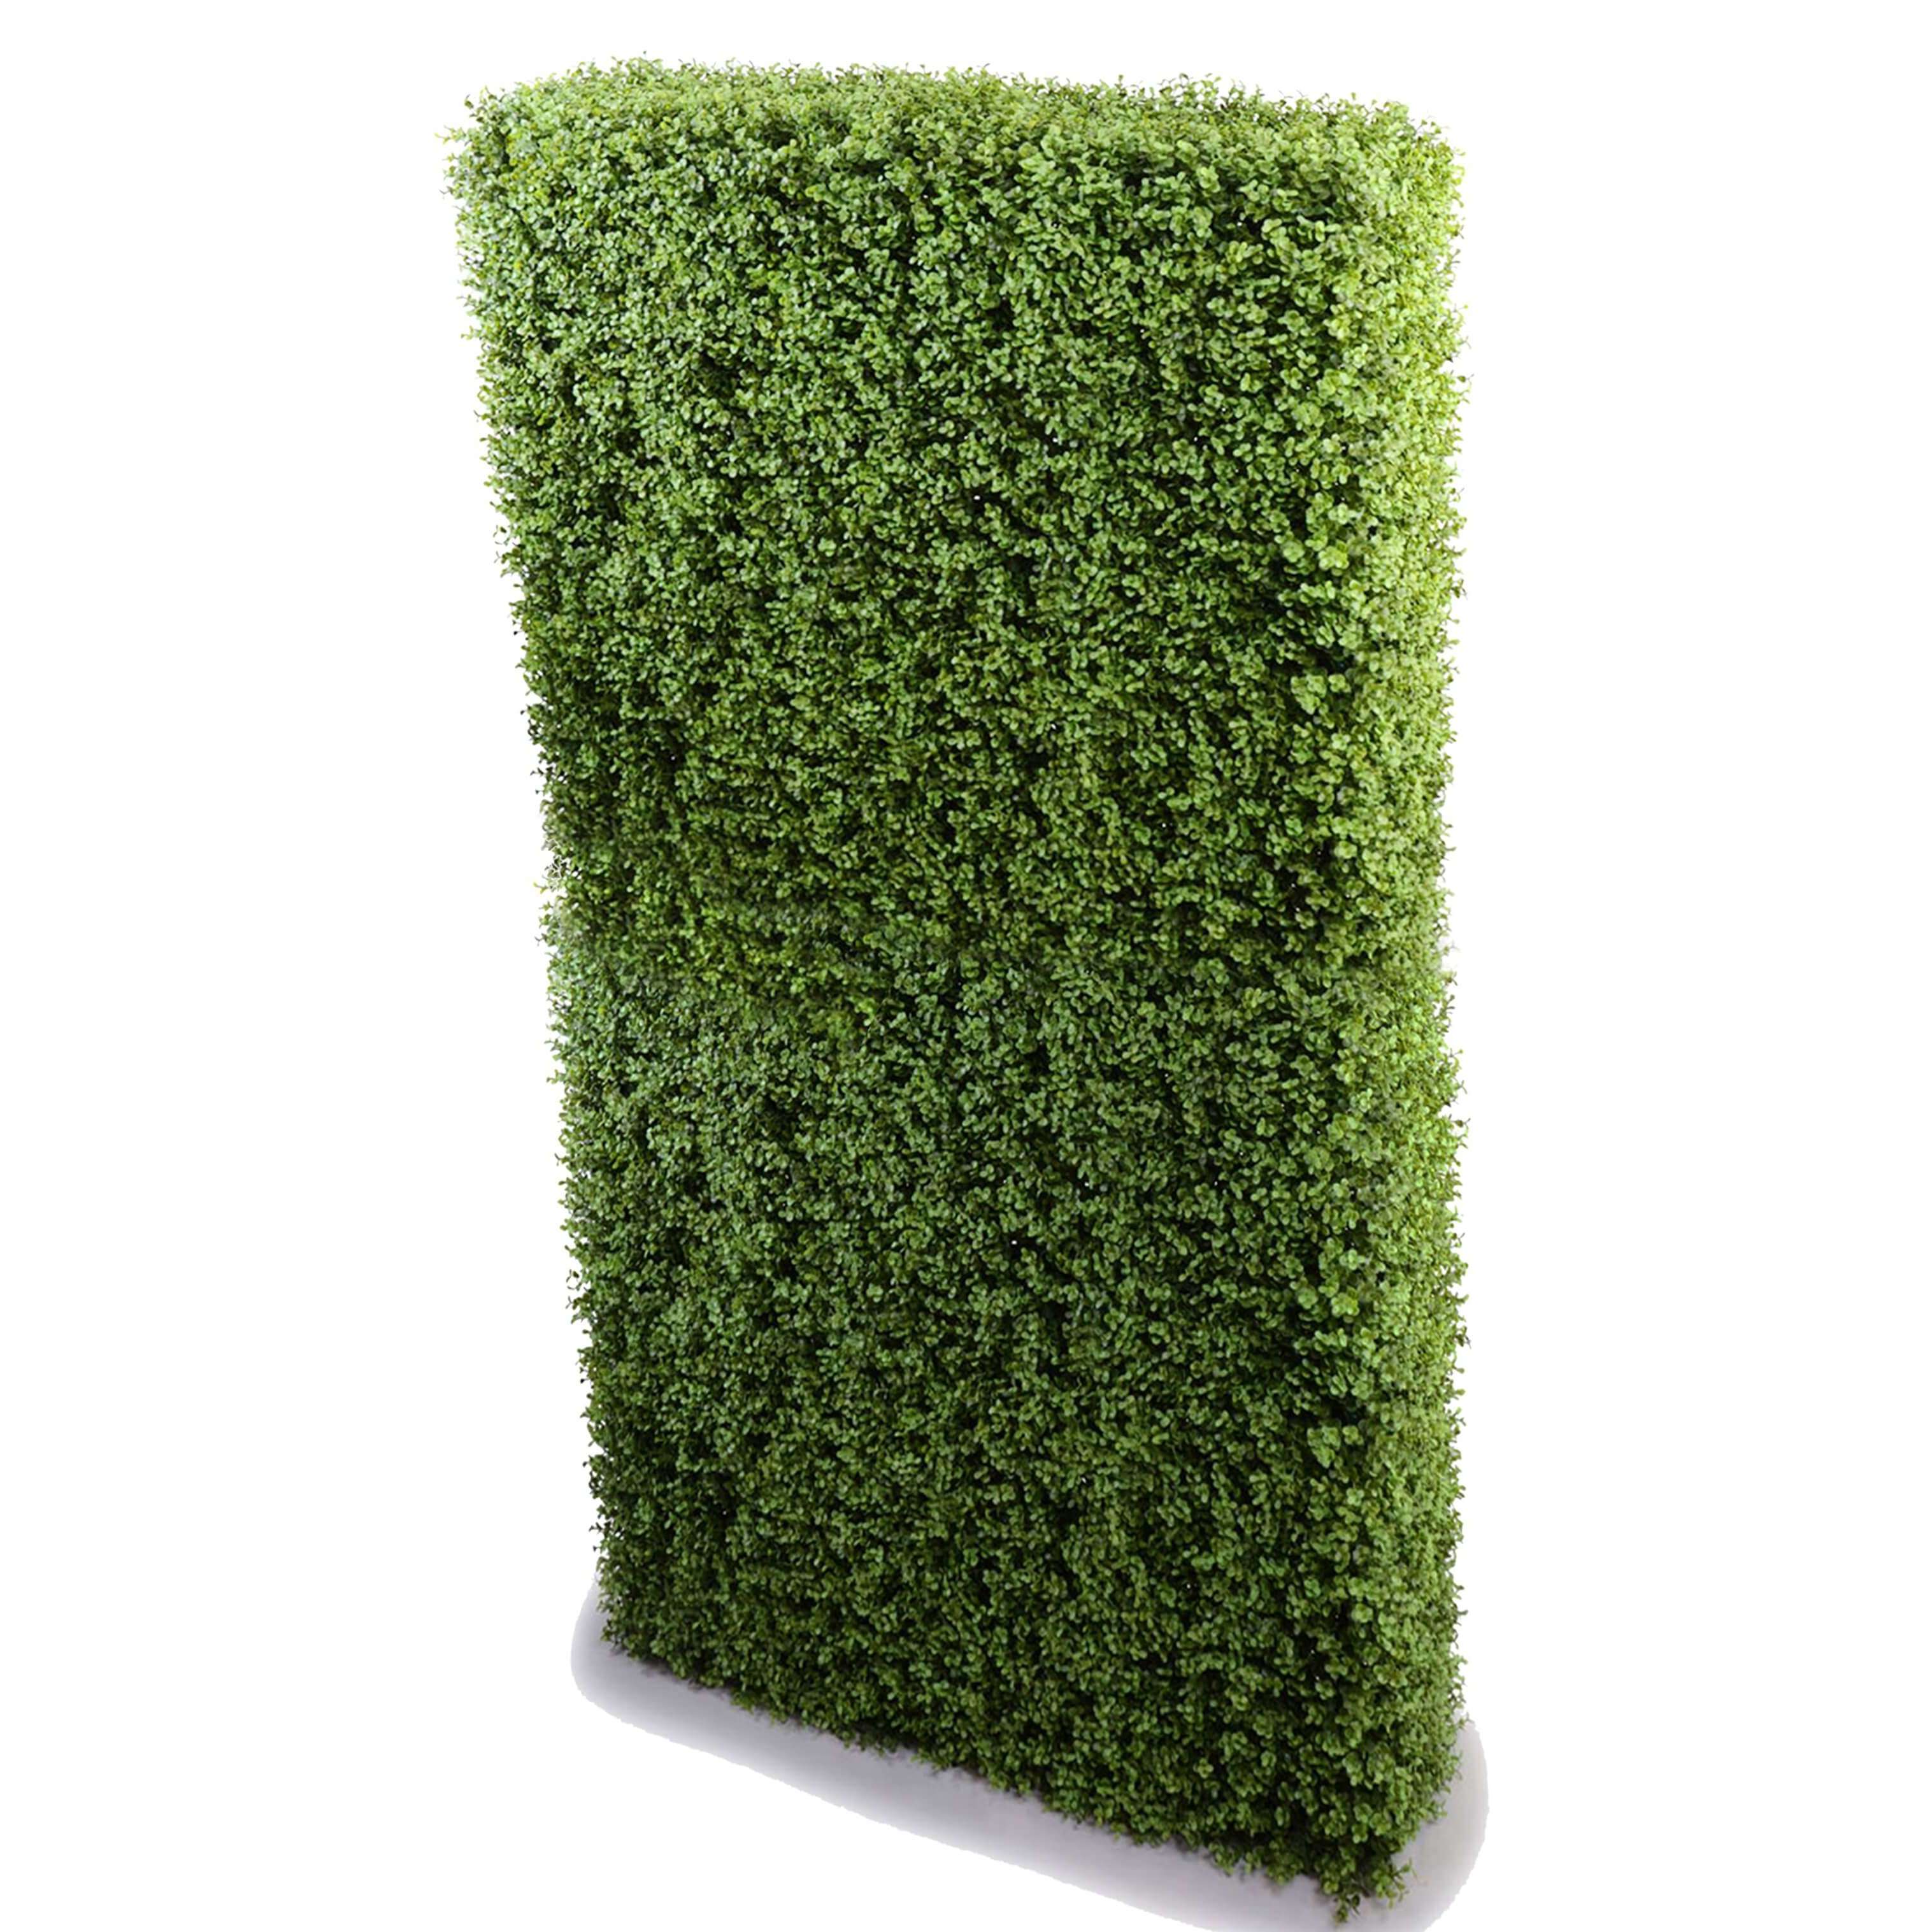 Portable Premium Buxus Artificial Hedge UV stabilised (2m x 1m) - Designer Vertical Gardens artificial garden wall plants artificial green wall australia